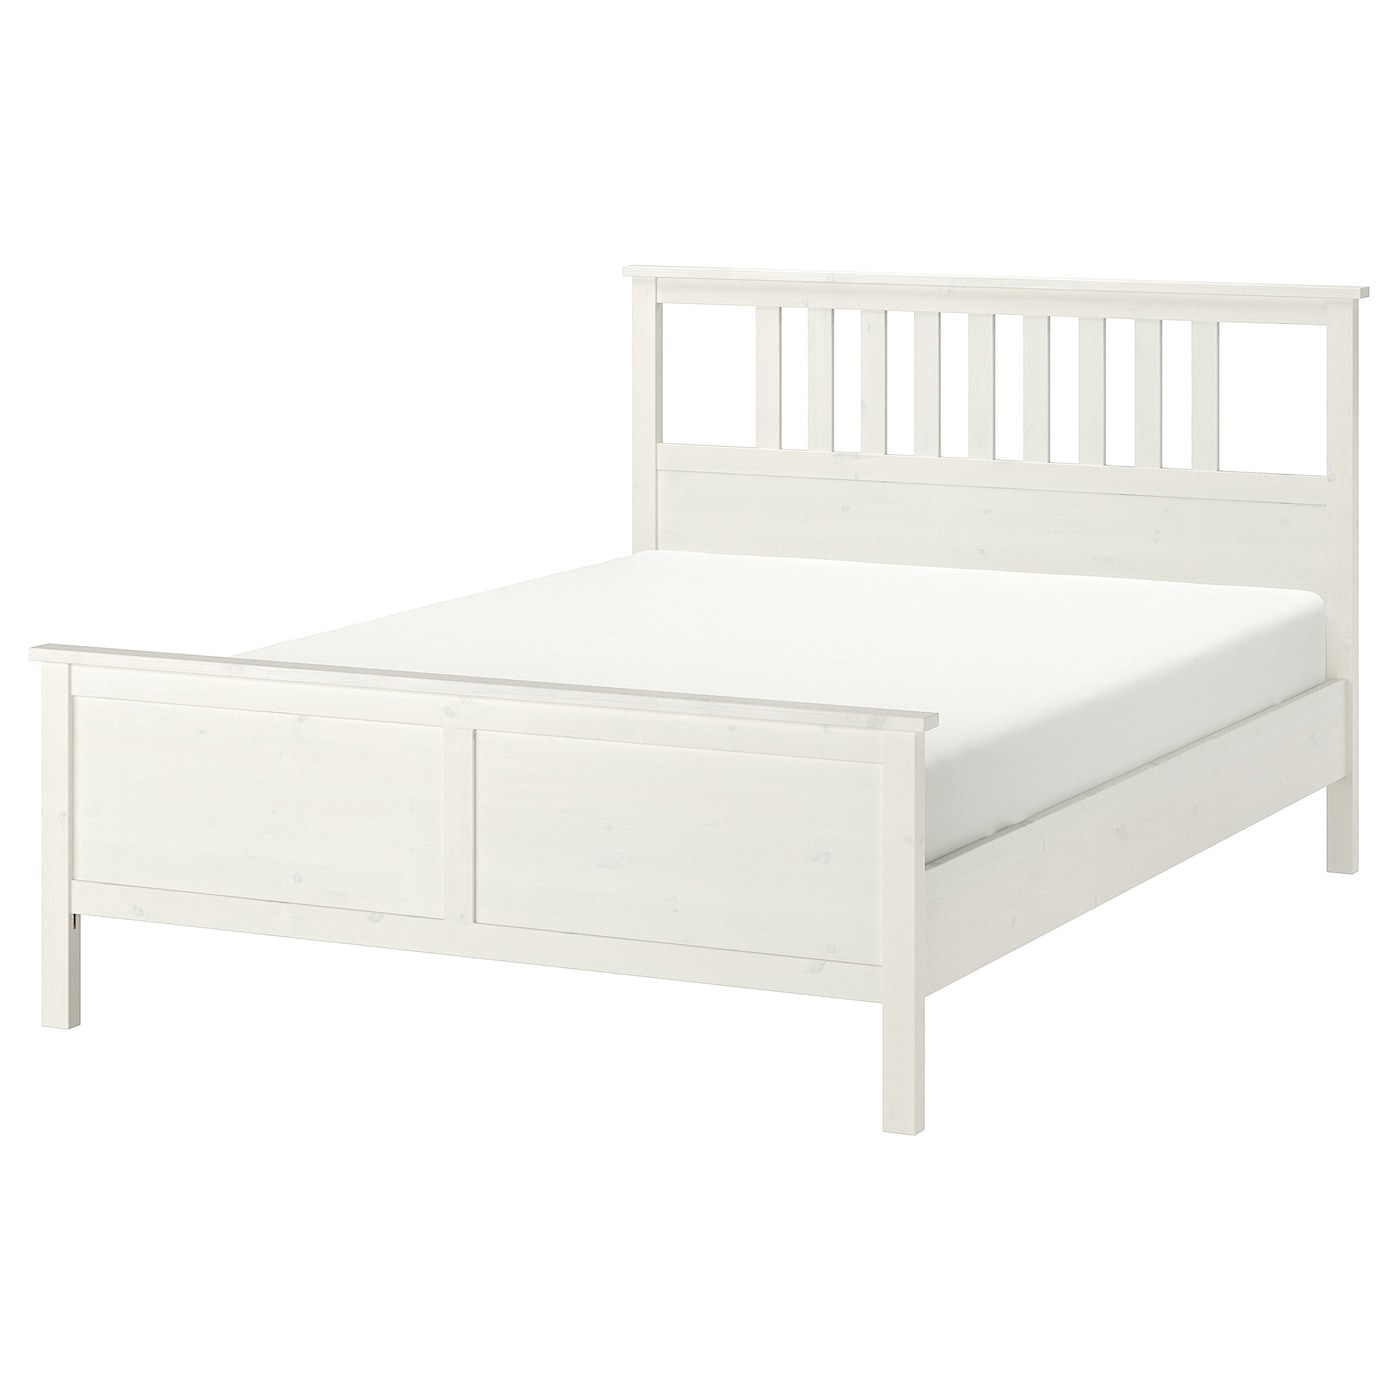 Каркас кровати - IKEA HEMNES, 200х140 см, белый, ХЕМНЕС ИКЕА